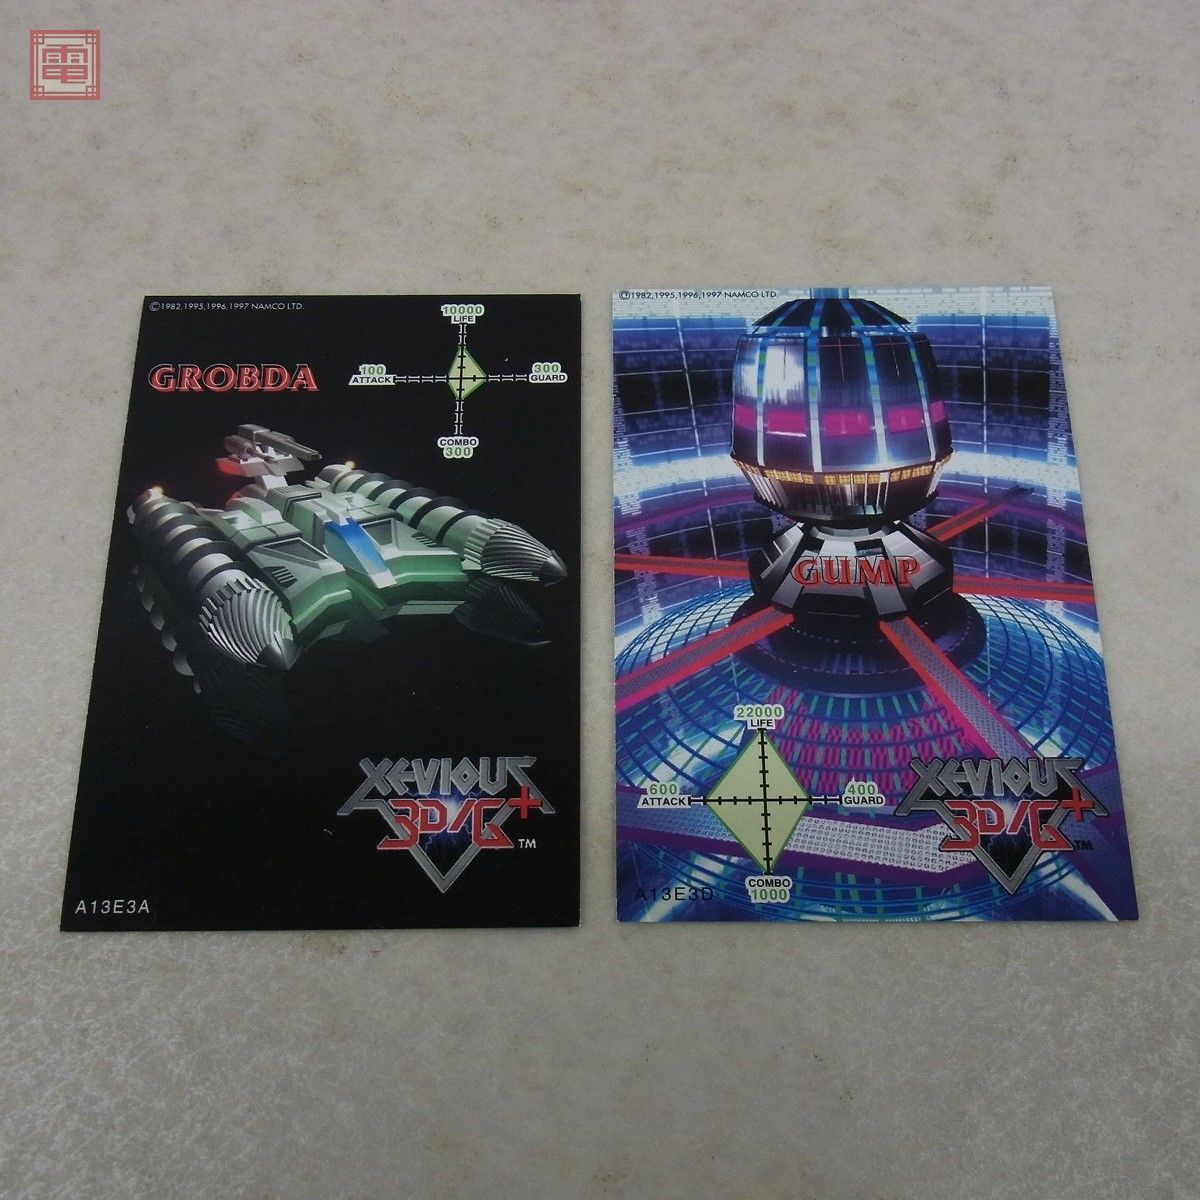  гарантия работы товар CDzebi незначительный 3D/G+ PlayStation саундтрек 001 XEVIOUS Namco NAMCO obi открытка / карта есть [10